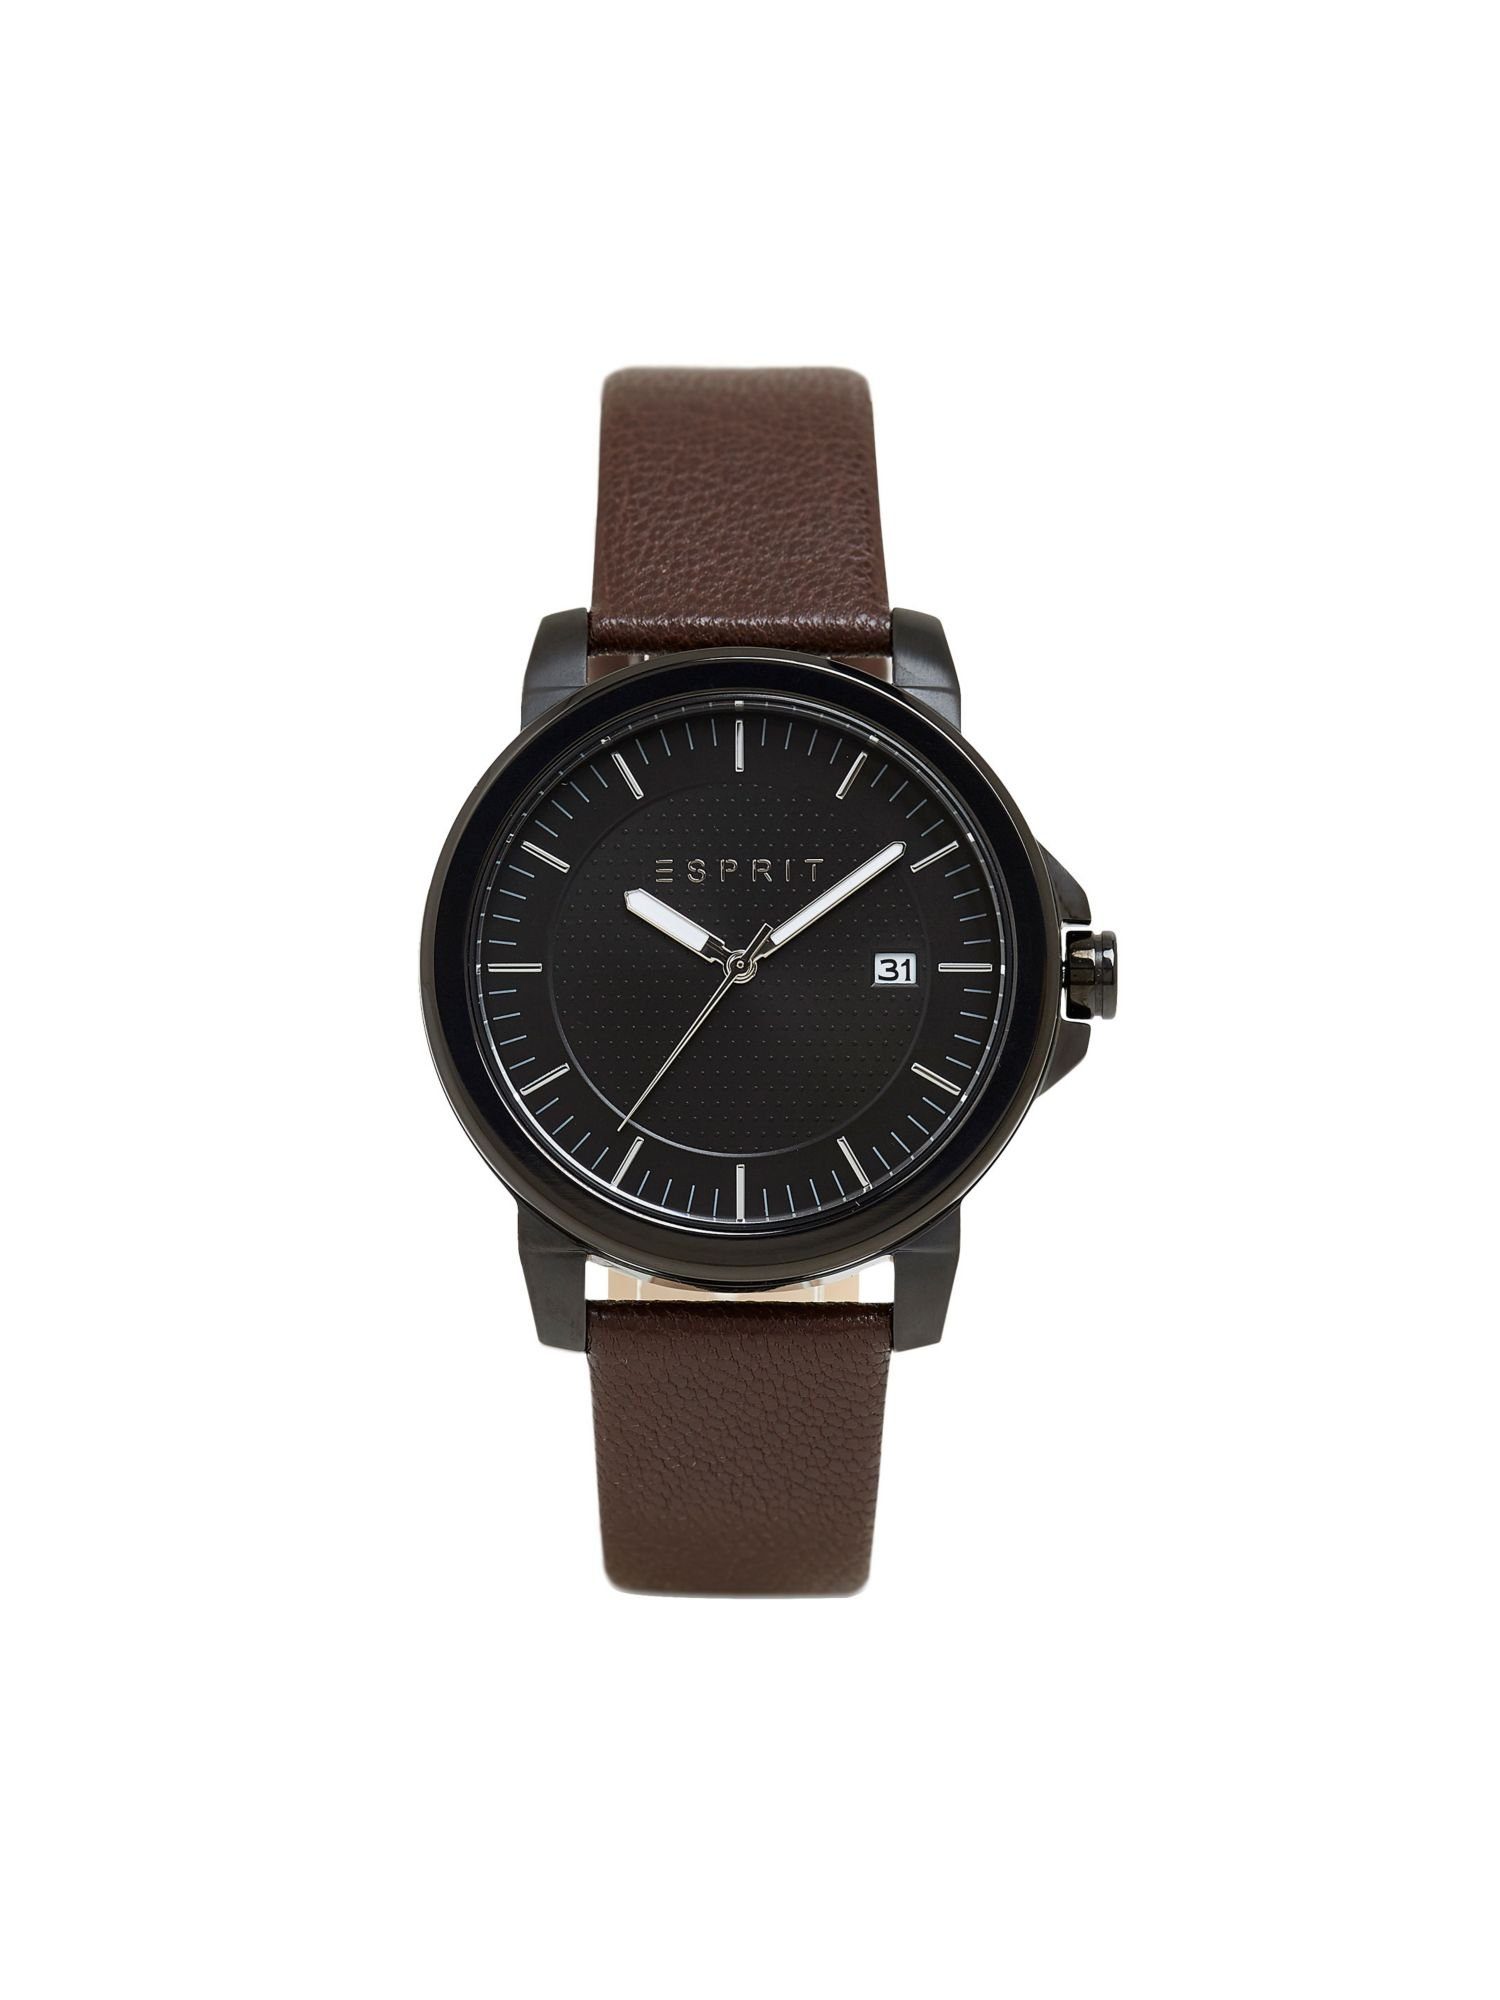 Esprit Quarzuhr Leder-Armband Edelstahl-Uhr mit